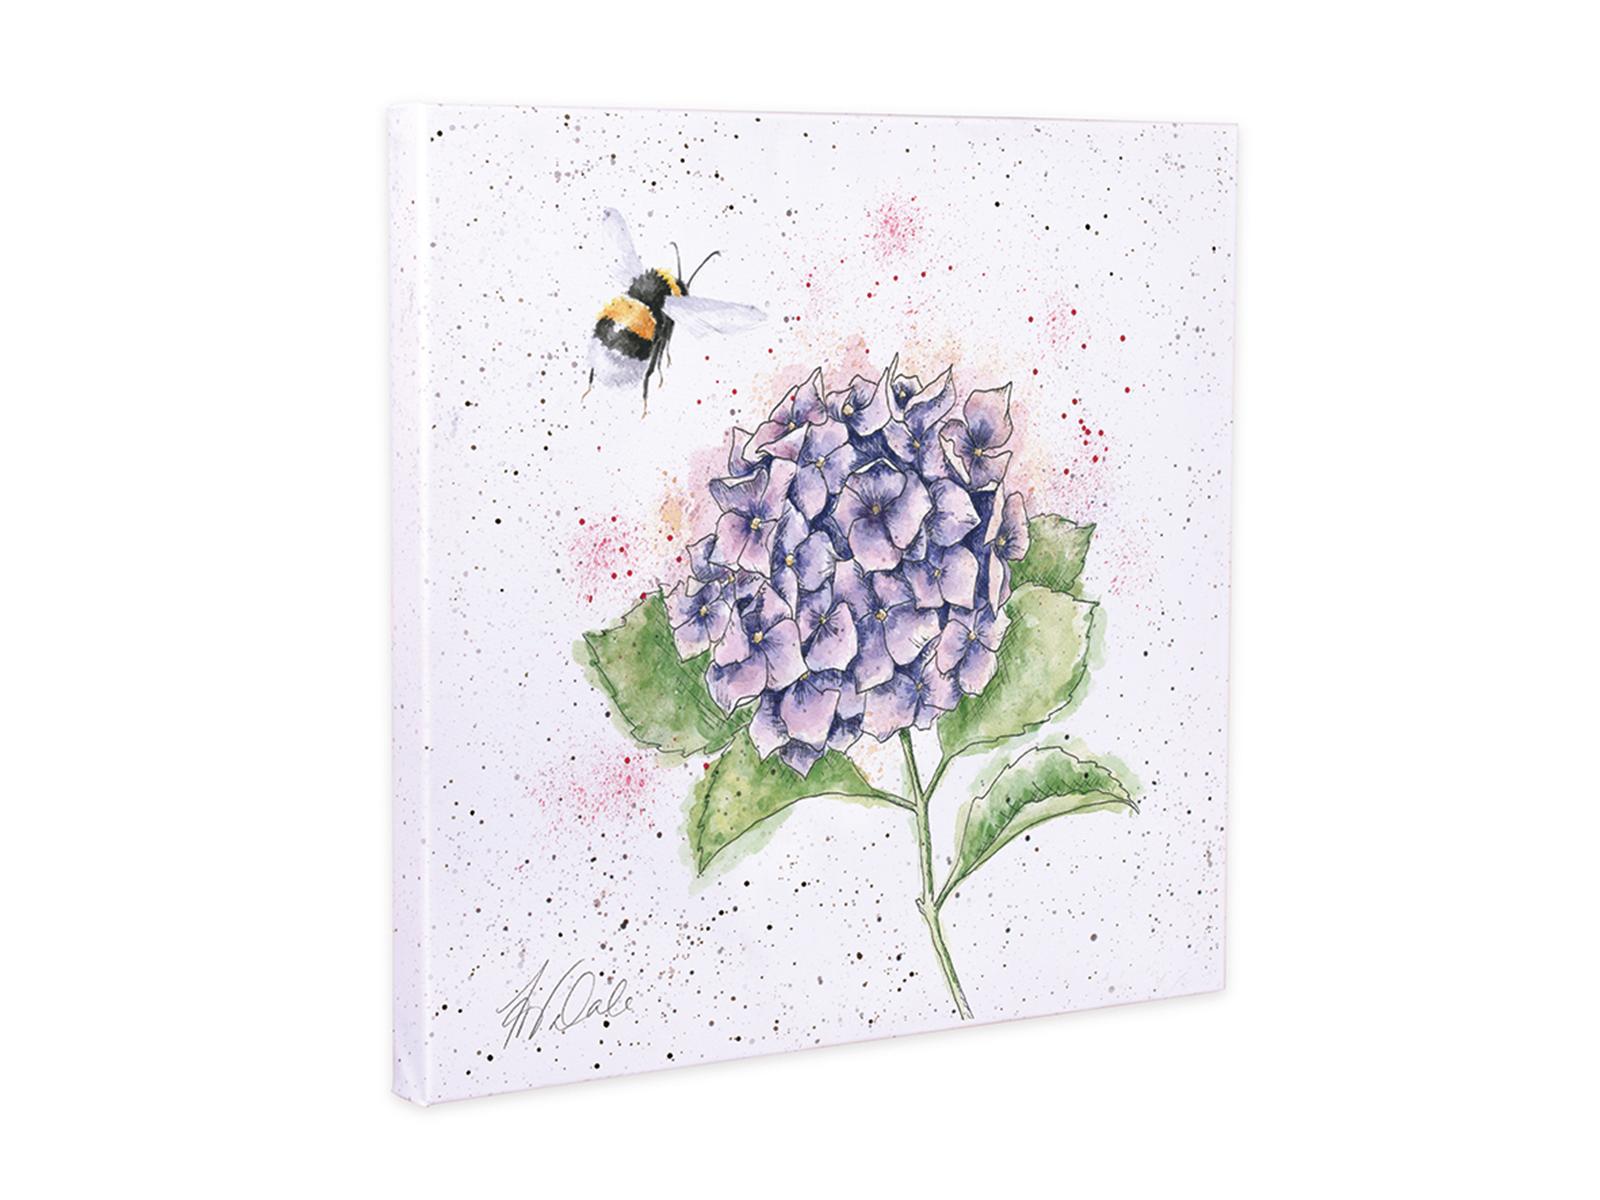 Wrendale Leinwand medium, Aufdruck Hummel fliegt um Hortensie, "The Busy Bee",  50x50 cm